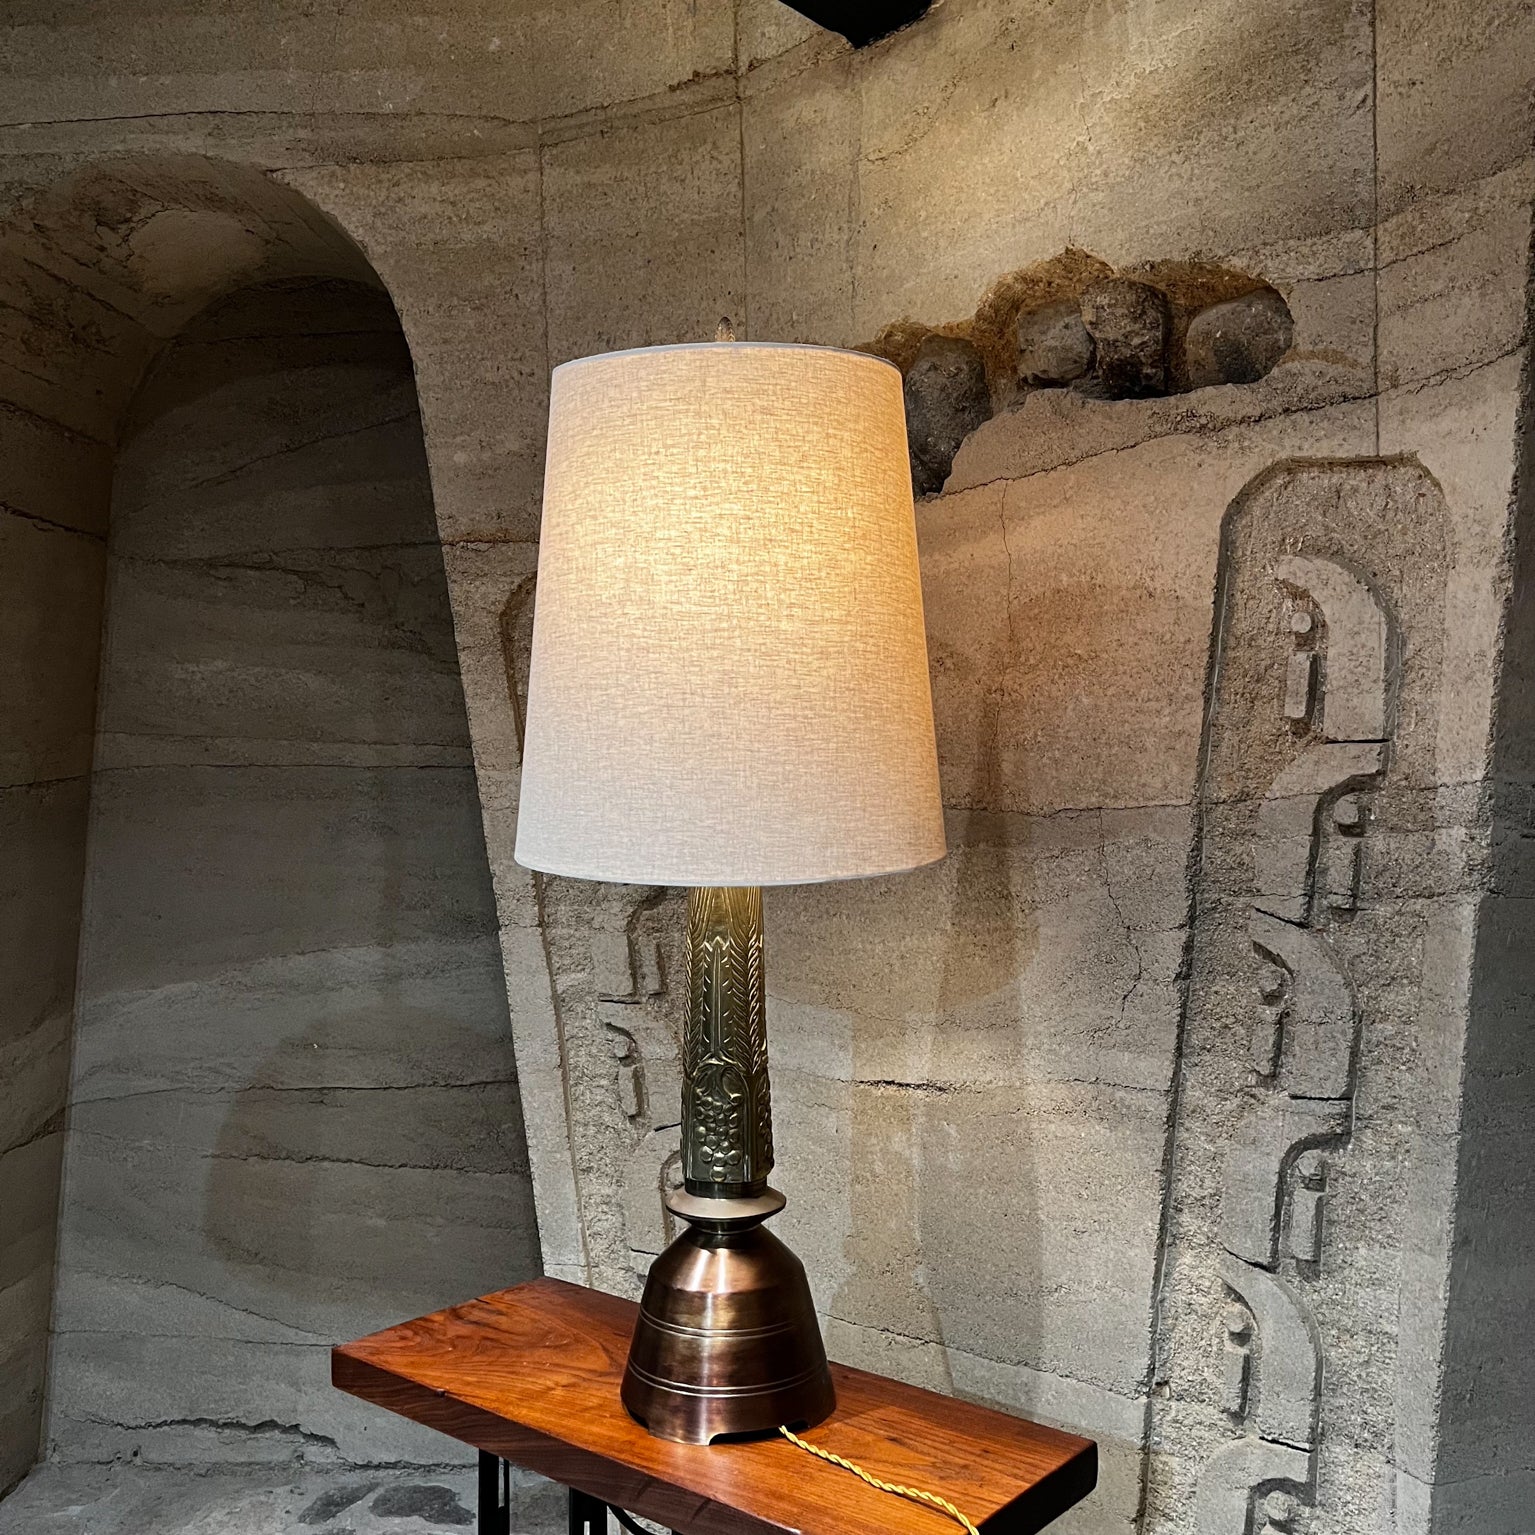 Lampe de bureau vintage en laiton massif inspirée de Frank Lloyd Wright
33,5 à la douille, 45 à l'embout X 8 diamètre
État original vintage d'occasion.
Aucun abat-jour n'est inclus.
Voir les images présentées.

